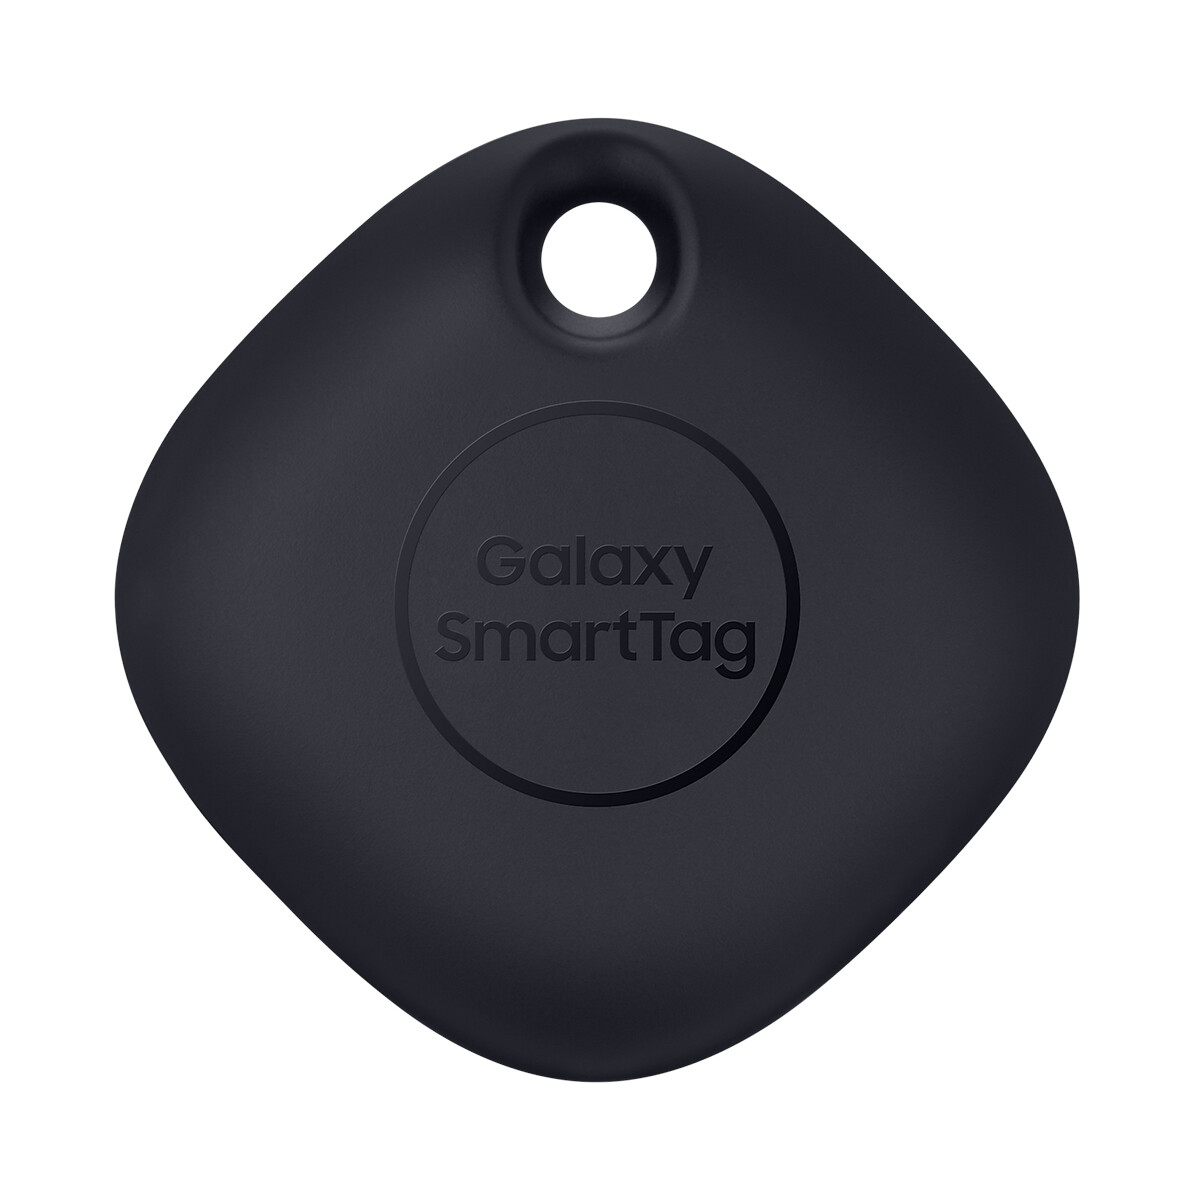 Localizador Bluetooth Samsung Galaxy Smart Tag (Pack x1) Original - Negro 